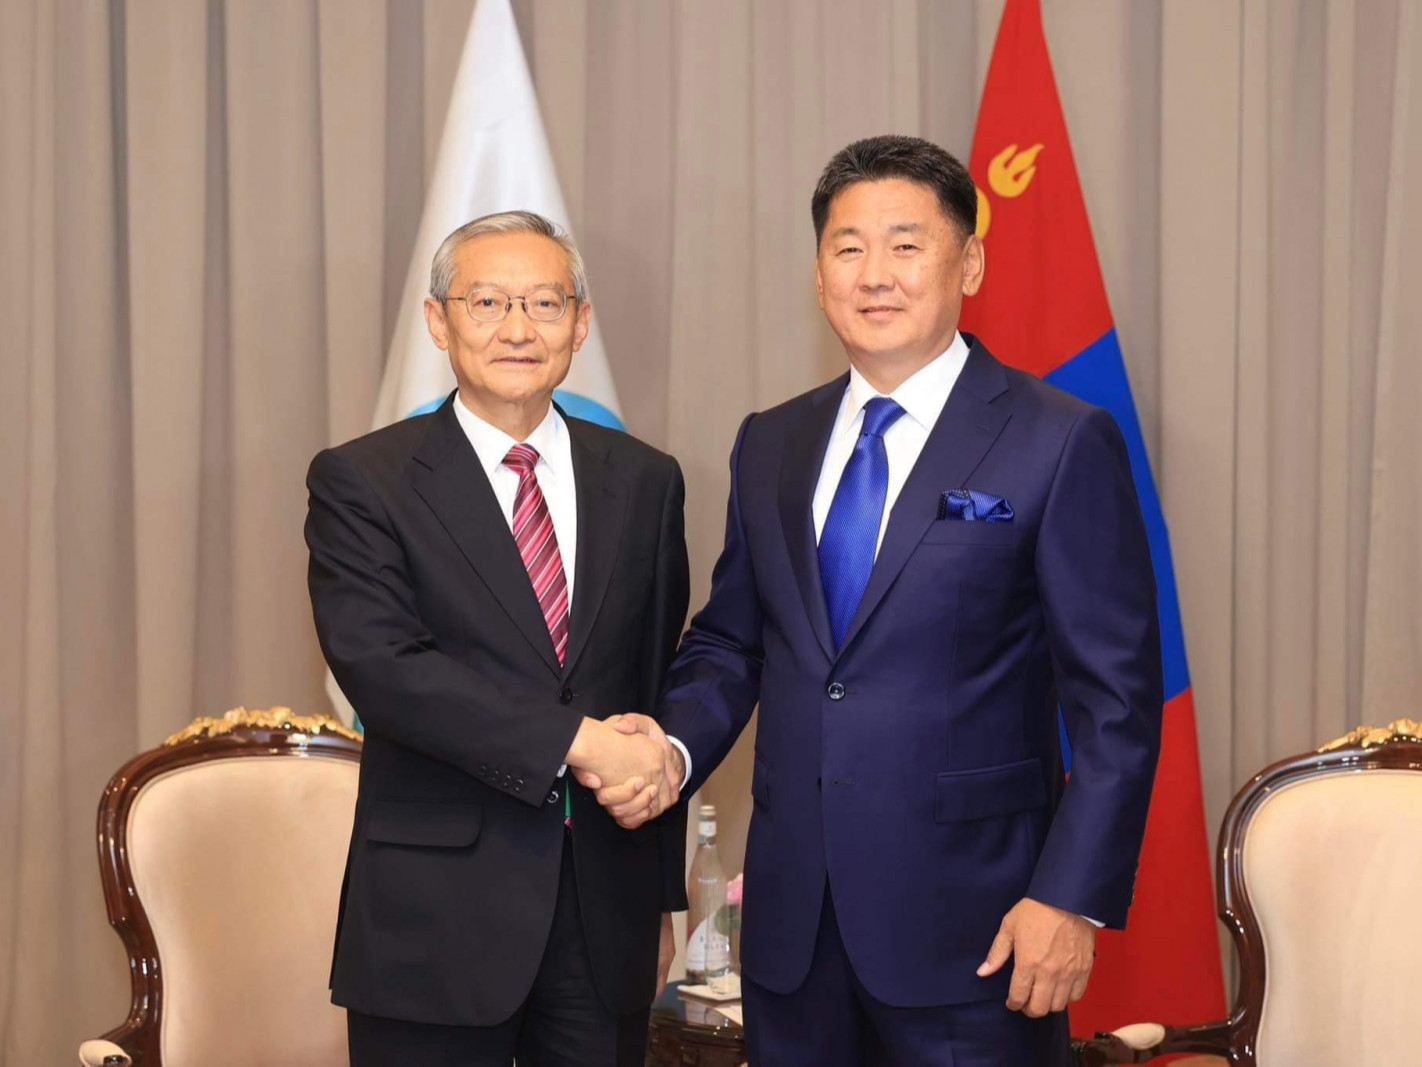 "Монгол Улс ажиглагч орны хувиар ШХАБ-тай хамтын ажиллагааг хөгжүүлнэ" гэж Ерөнхийлөгч У.Хүрэлсүх мэдэгдлээ